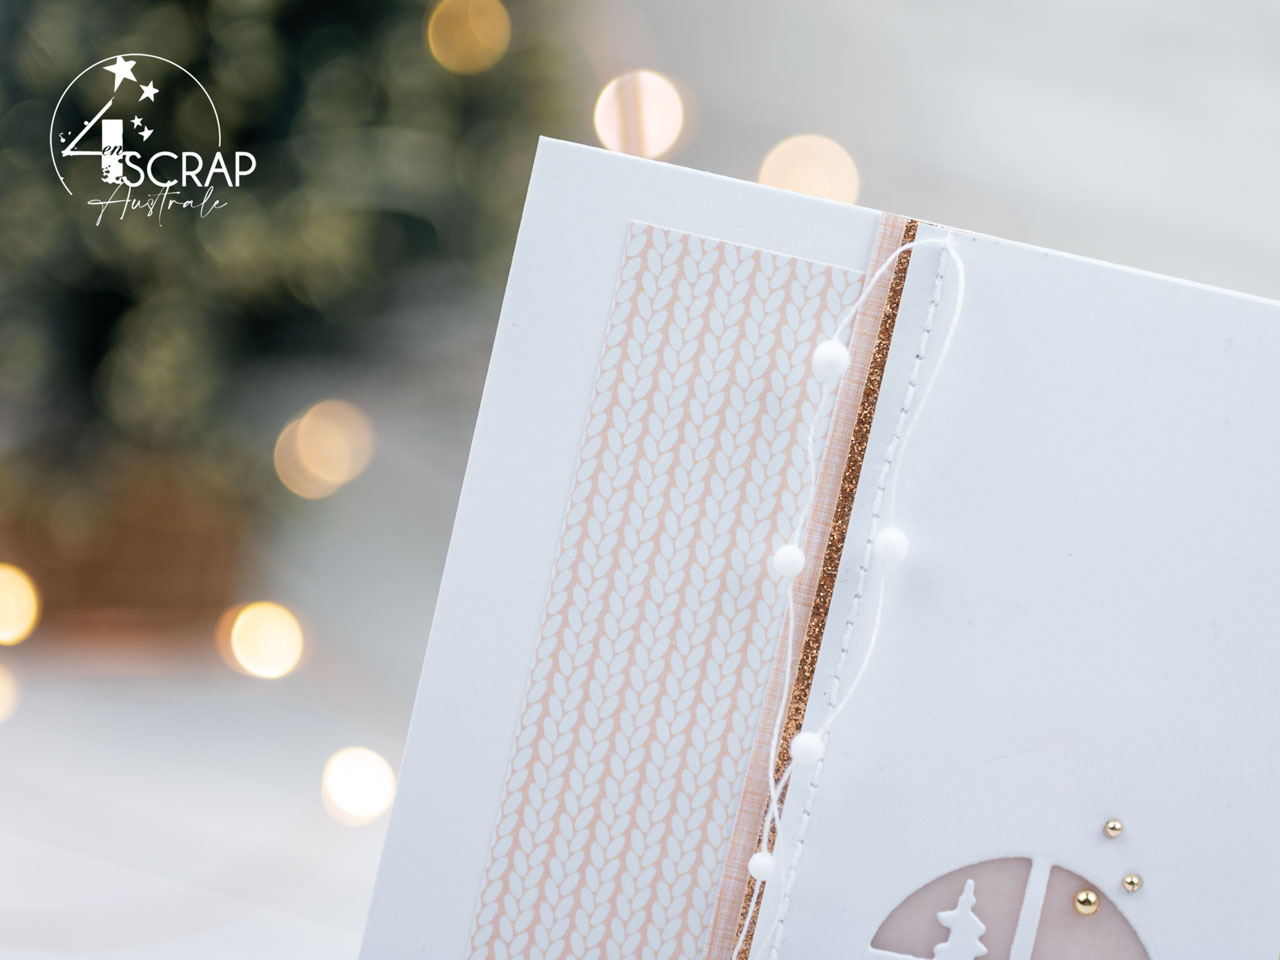 Création d'une carte de noël avec un adorable petit lutin portant des cadeaux au pied du sapin. Dans un combo en saumon, vert et cuivre avec la collection hiver 2021 de 4enscrap.